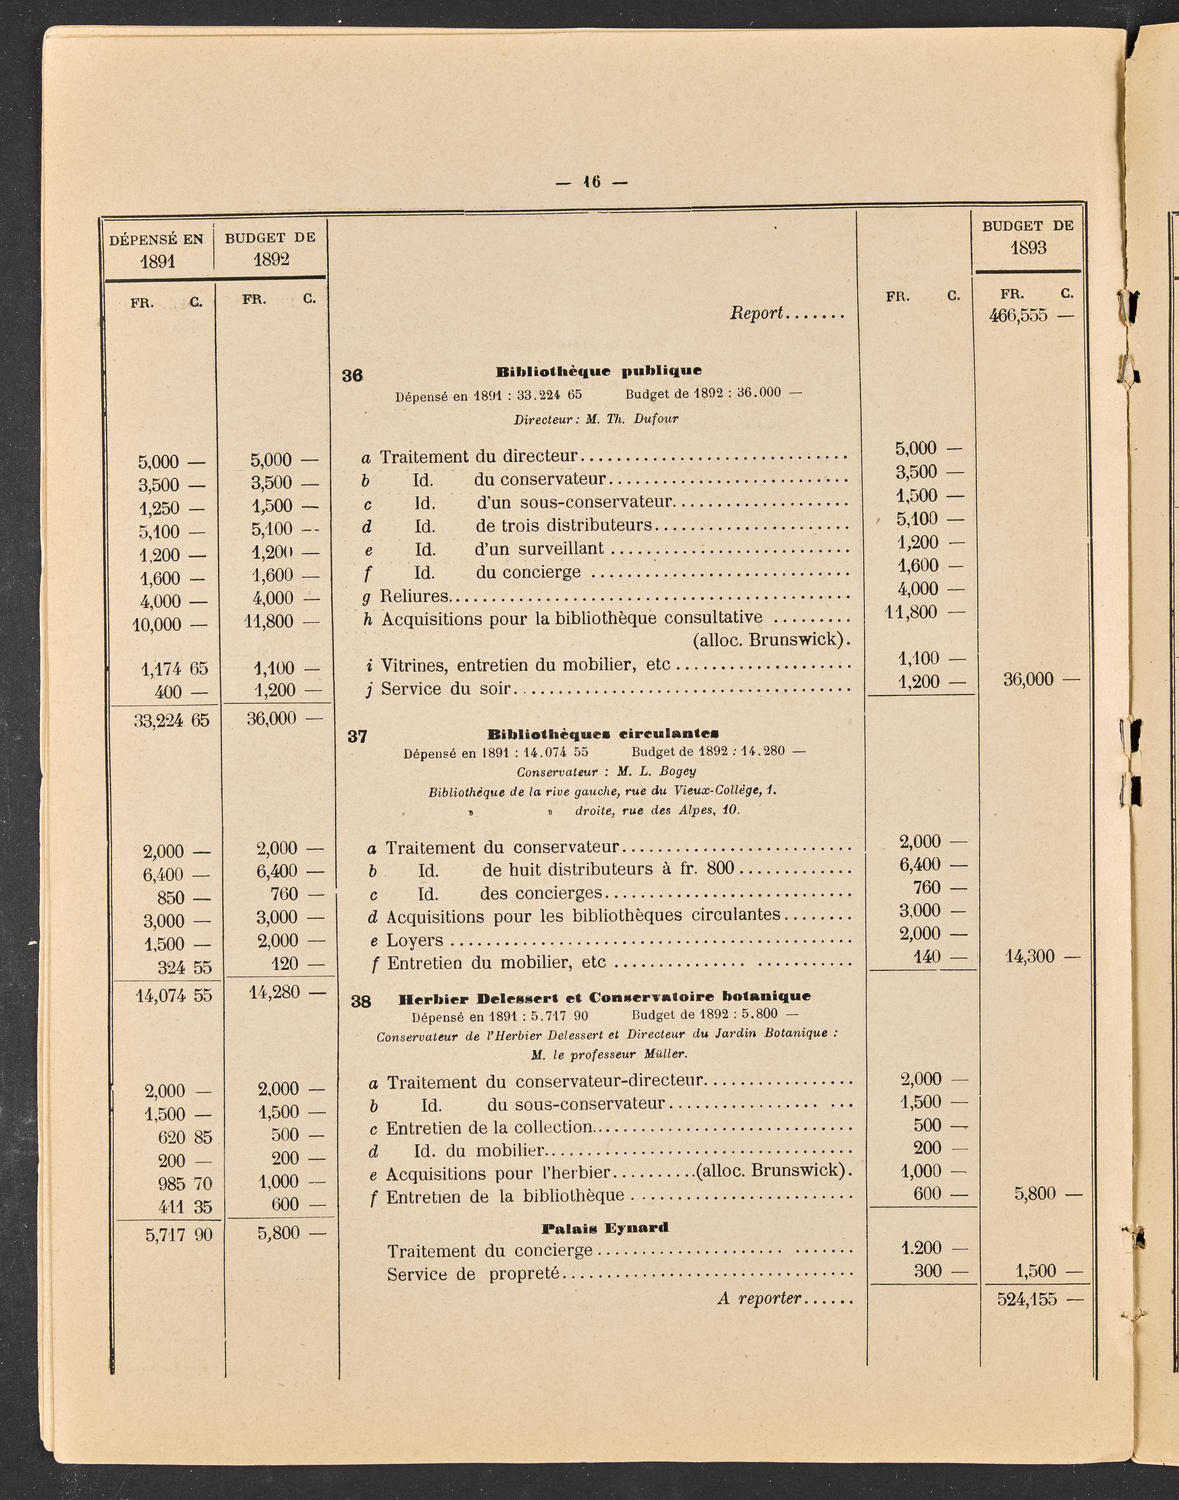 Budget de la Ville de Genève - Exercise de 1893, page 22 of 32